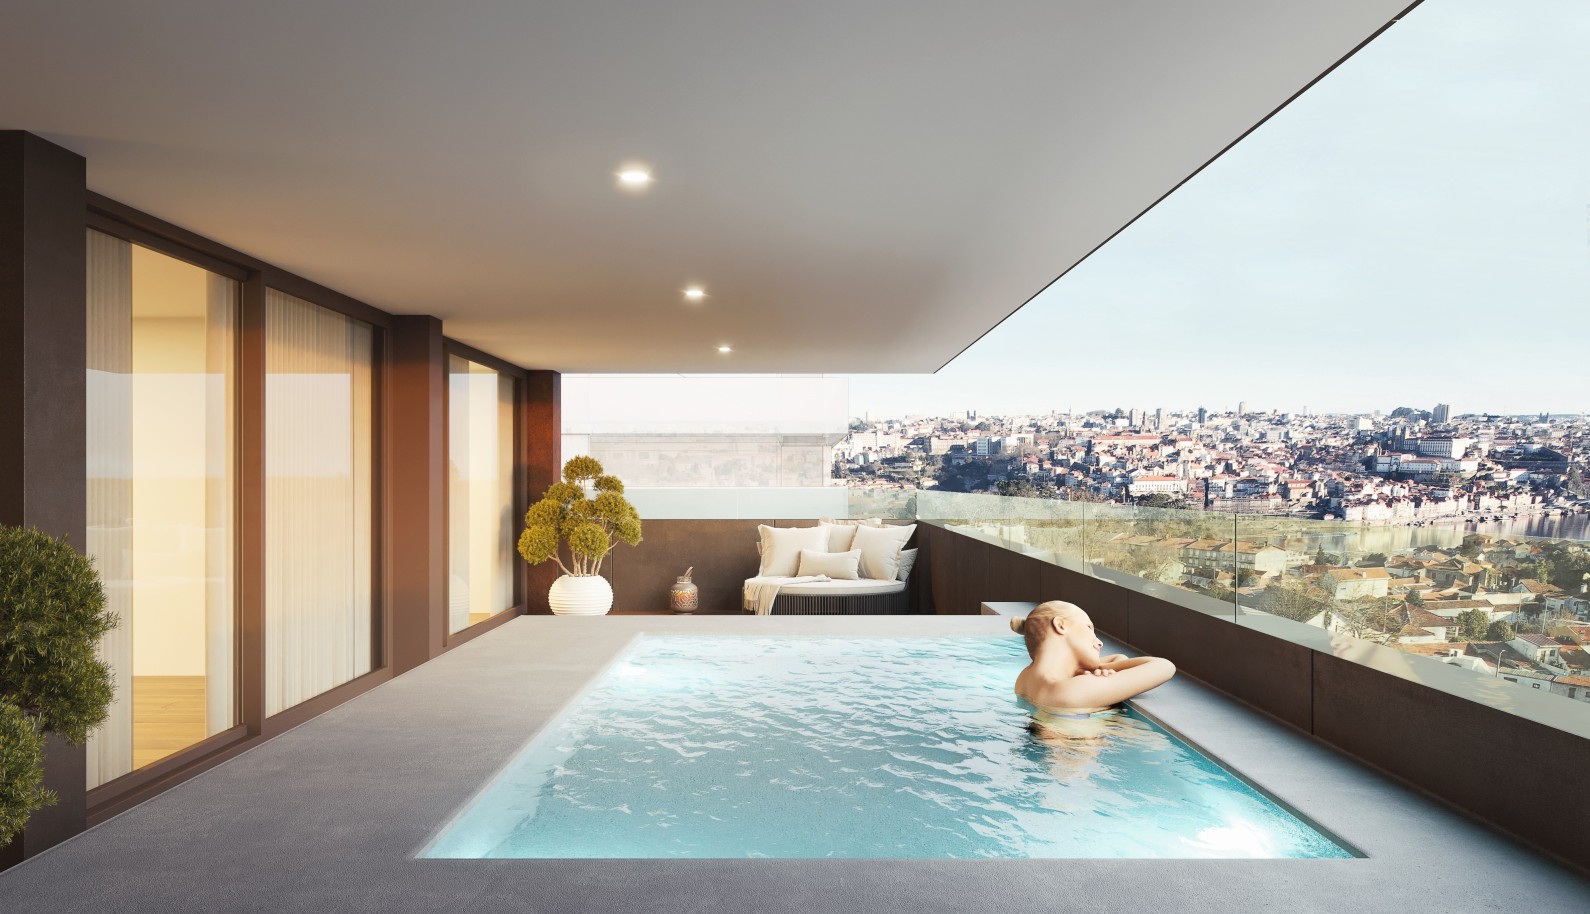 Apartamento novo com piscina, para venda, em V.N. Gaia, Porto, Portugal_252995